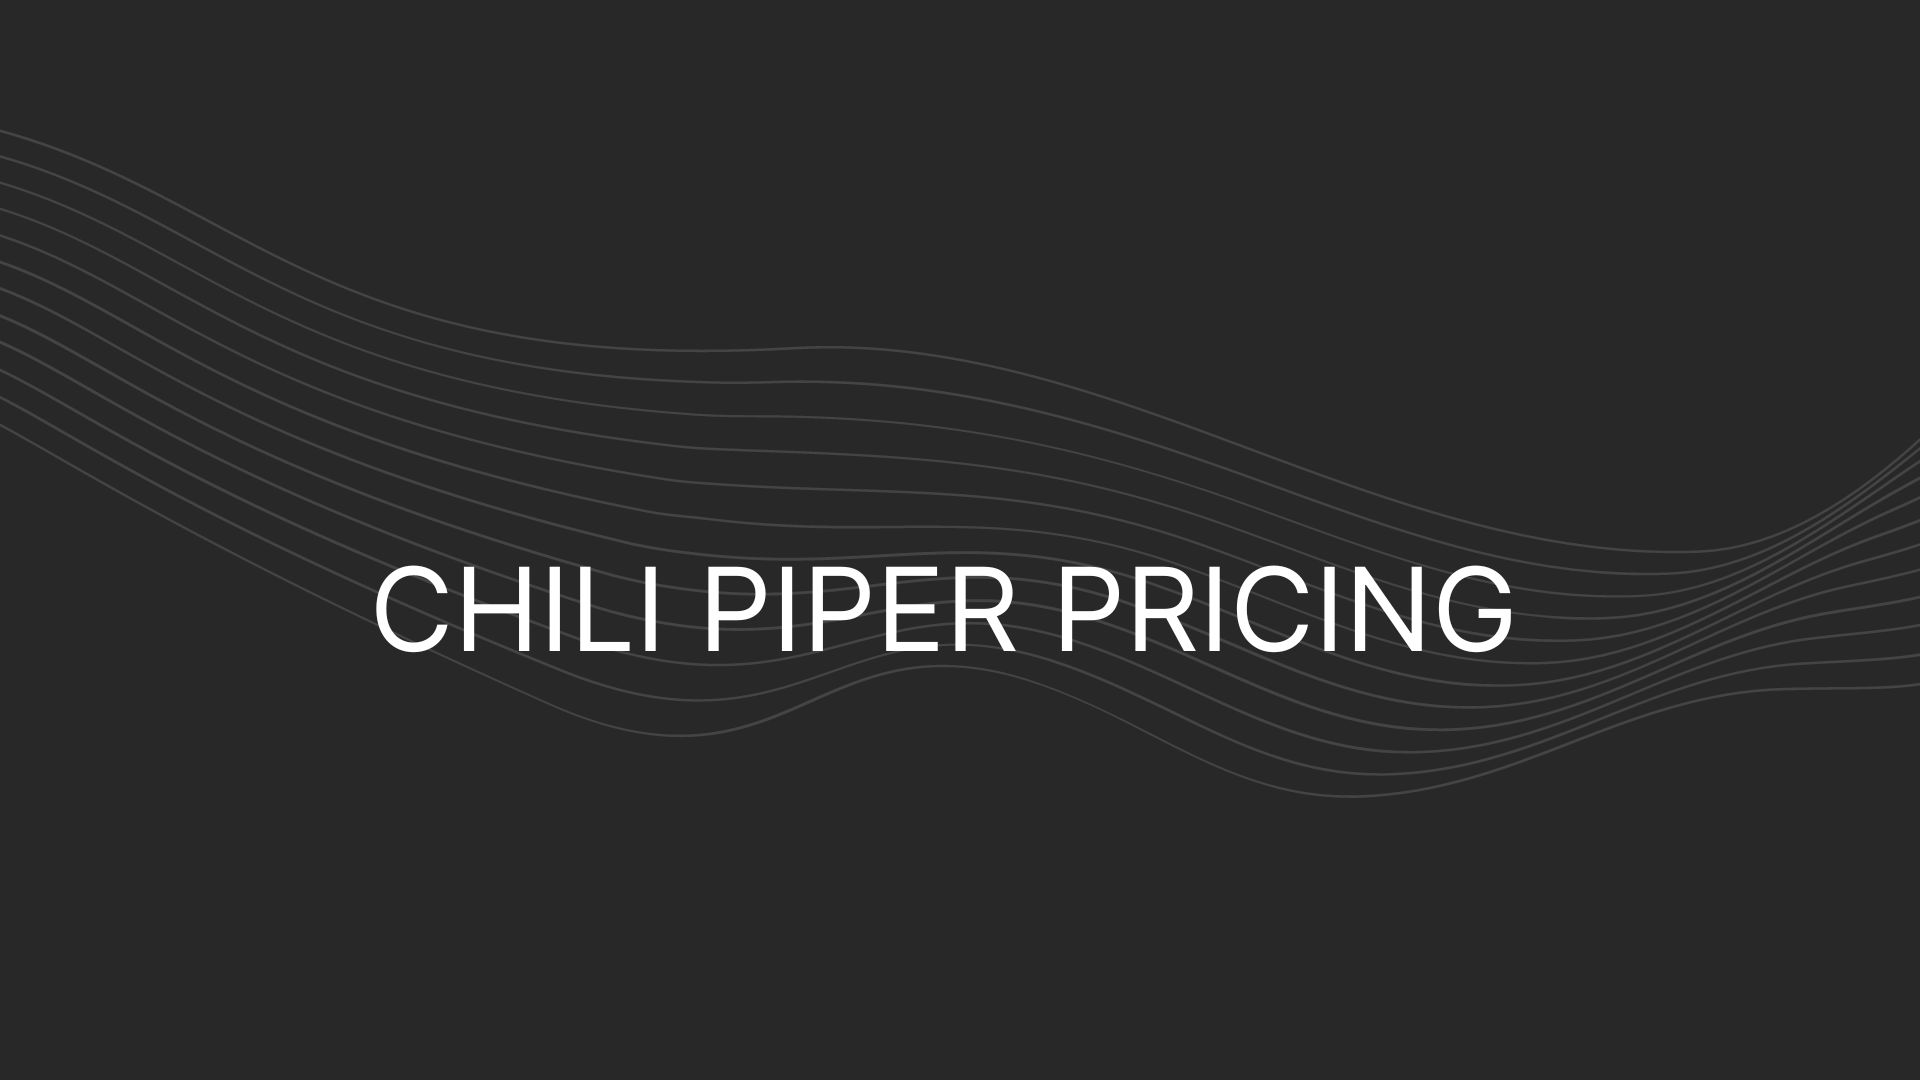 Chili Piper Pricing